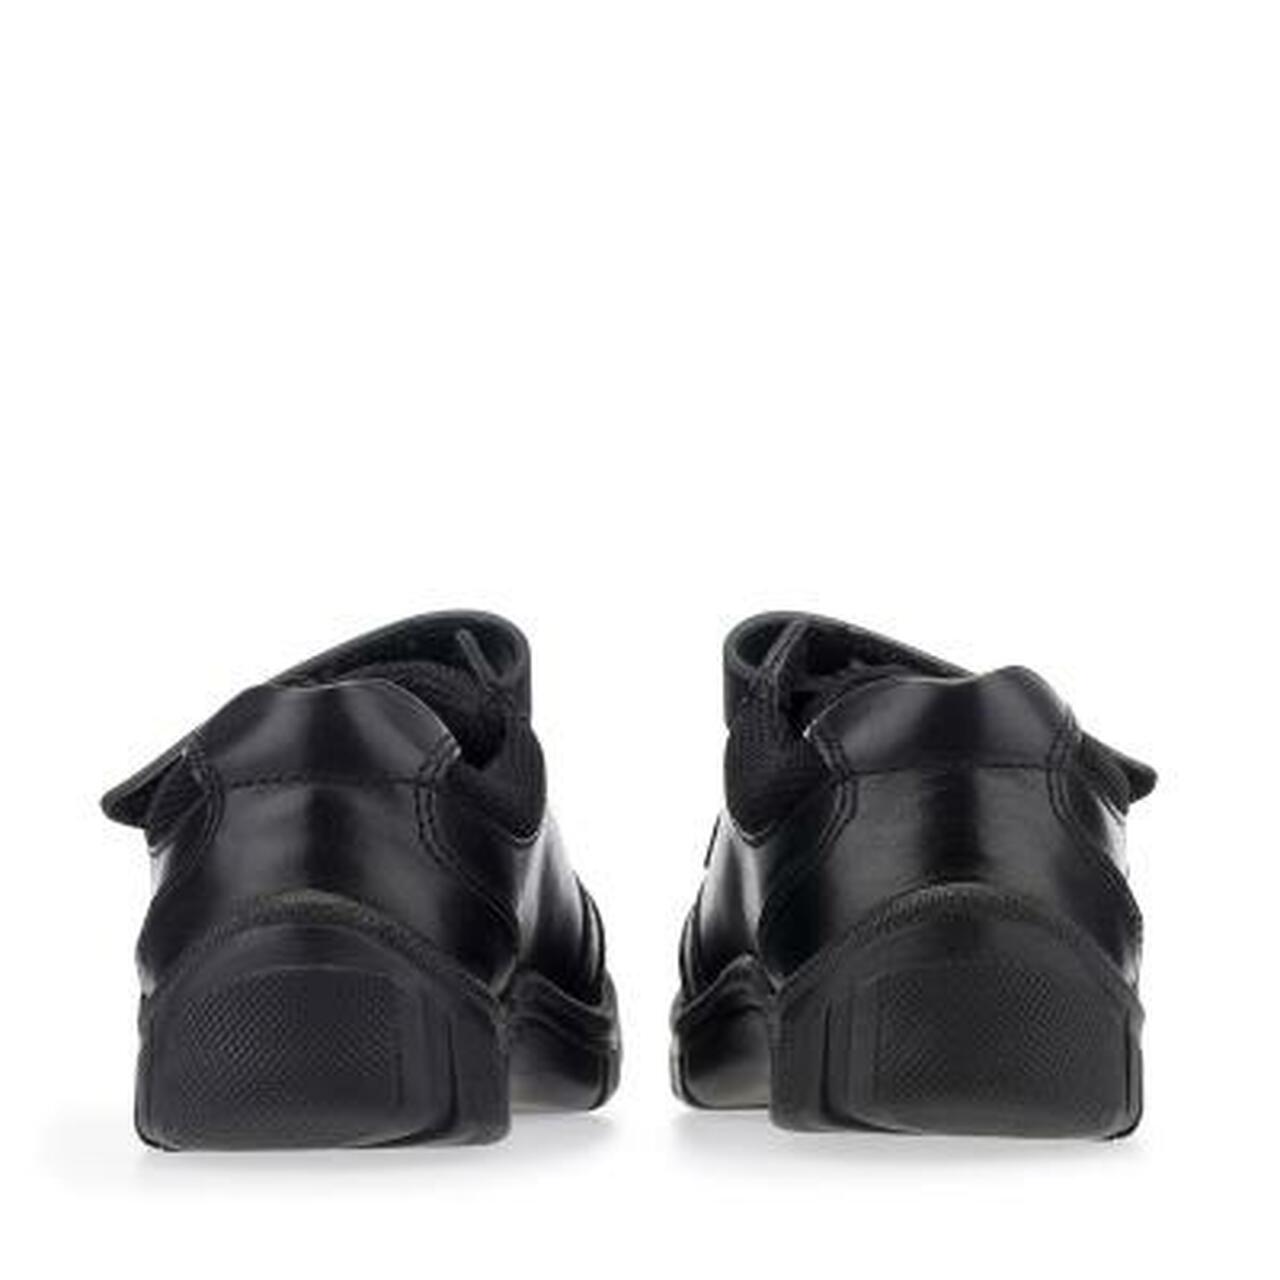 StartRite LUKE Leather School Shoes (Black)